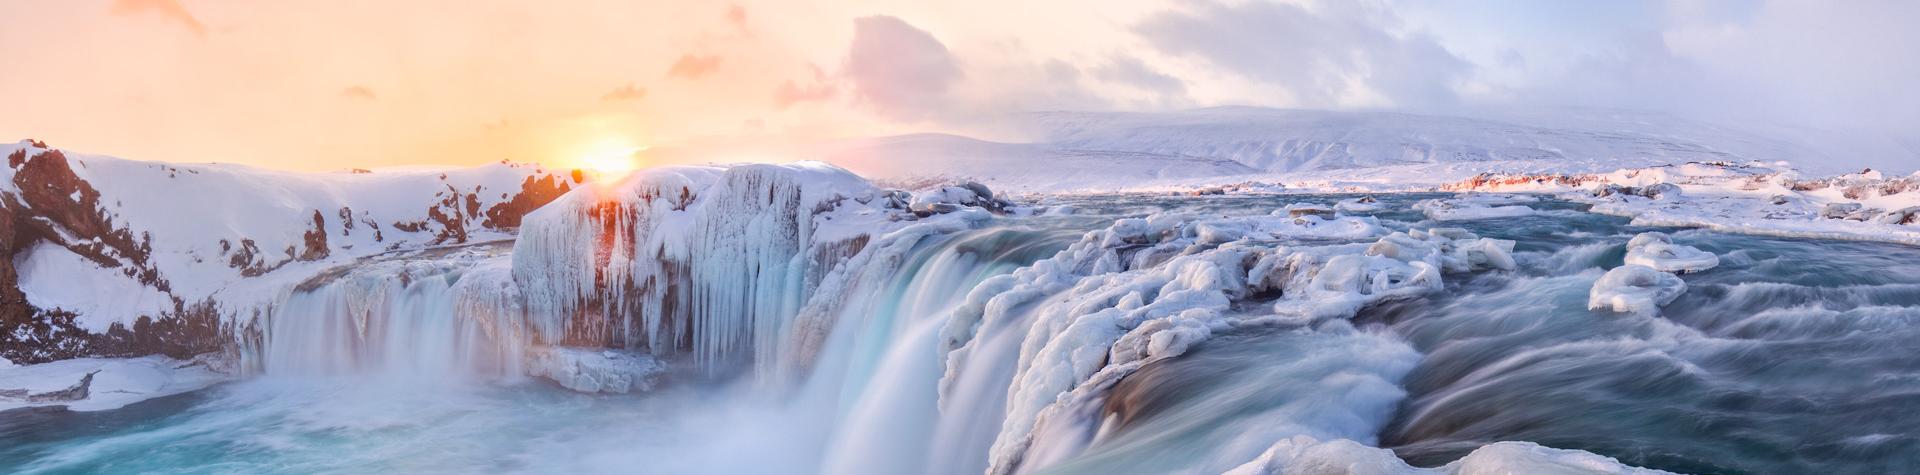 Waterfall Gullfoss in winter, Iceland.